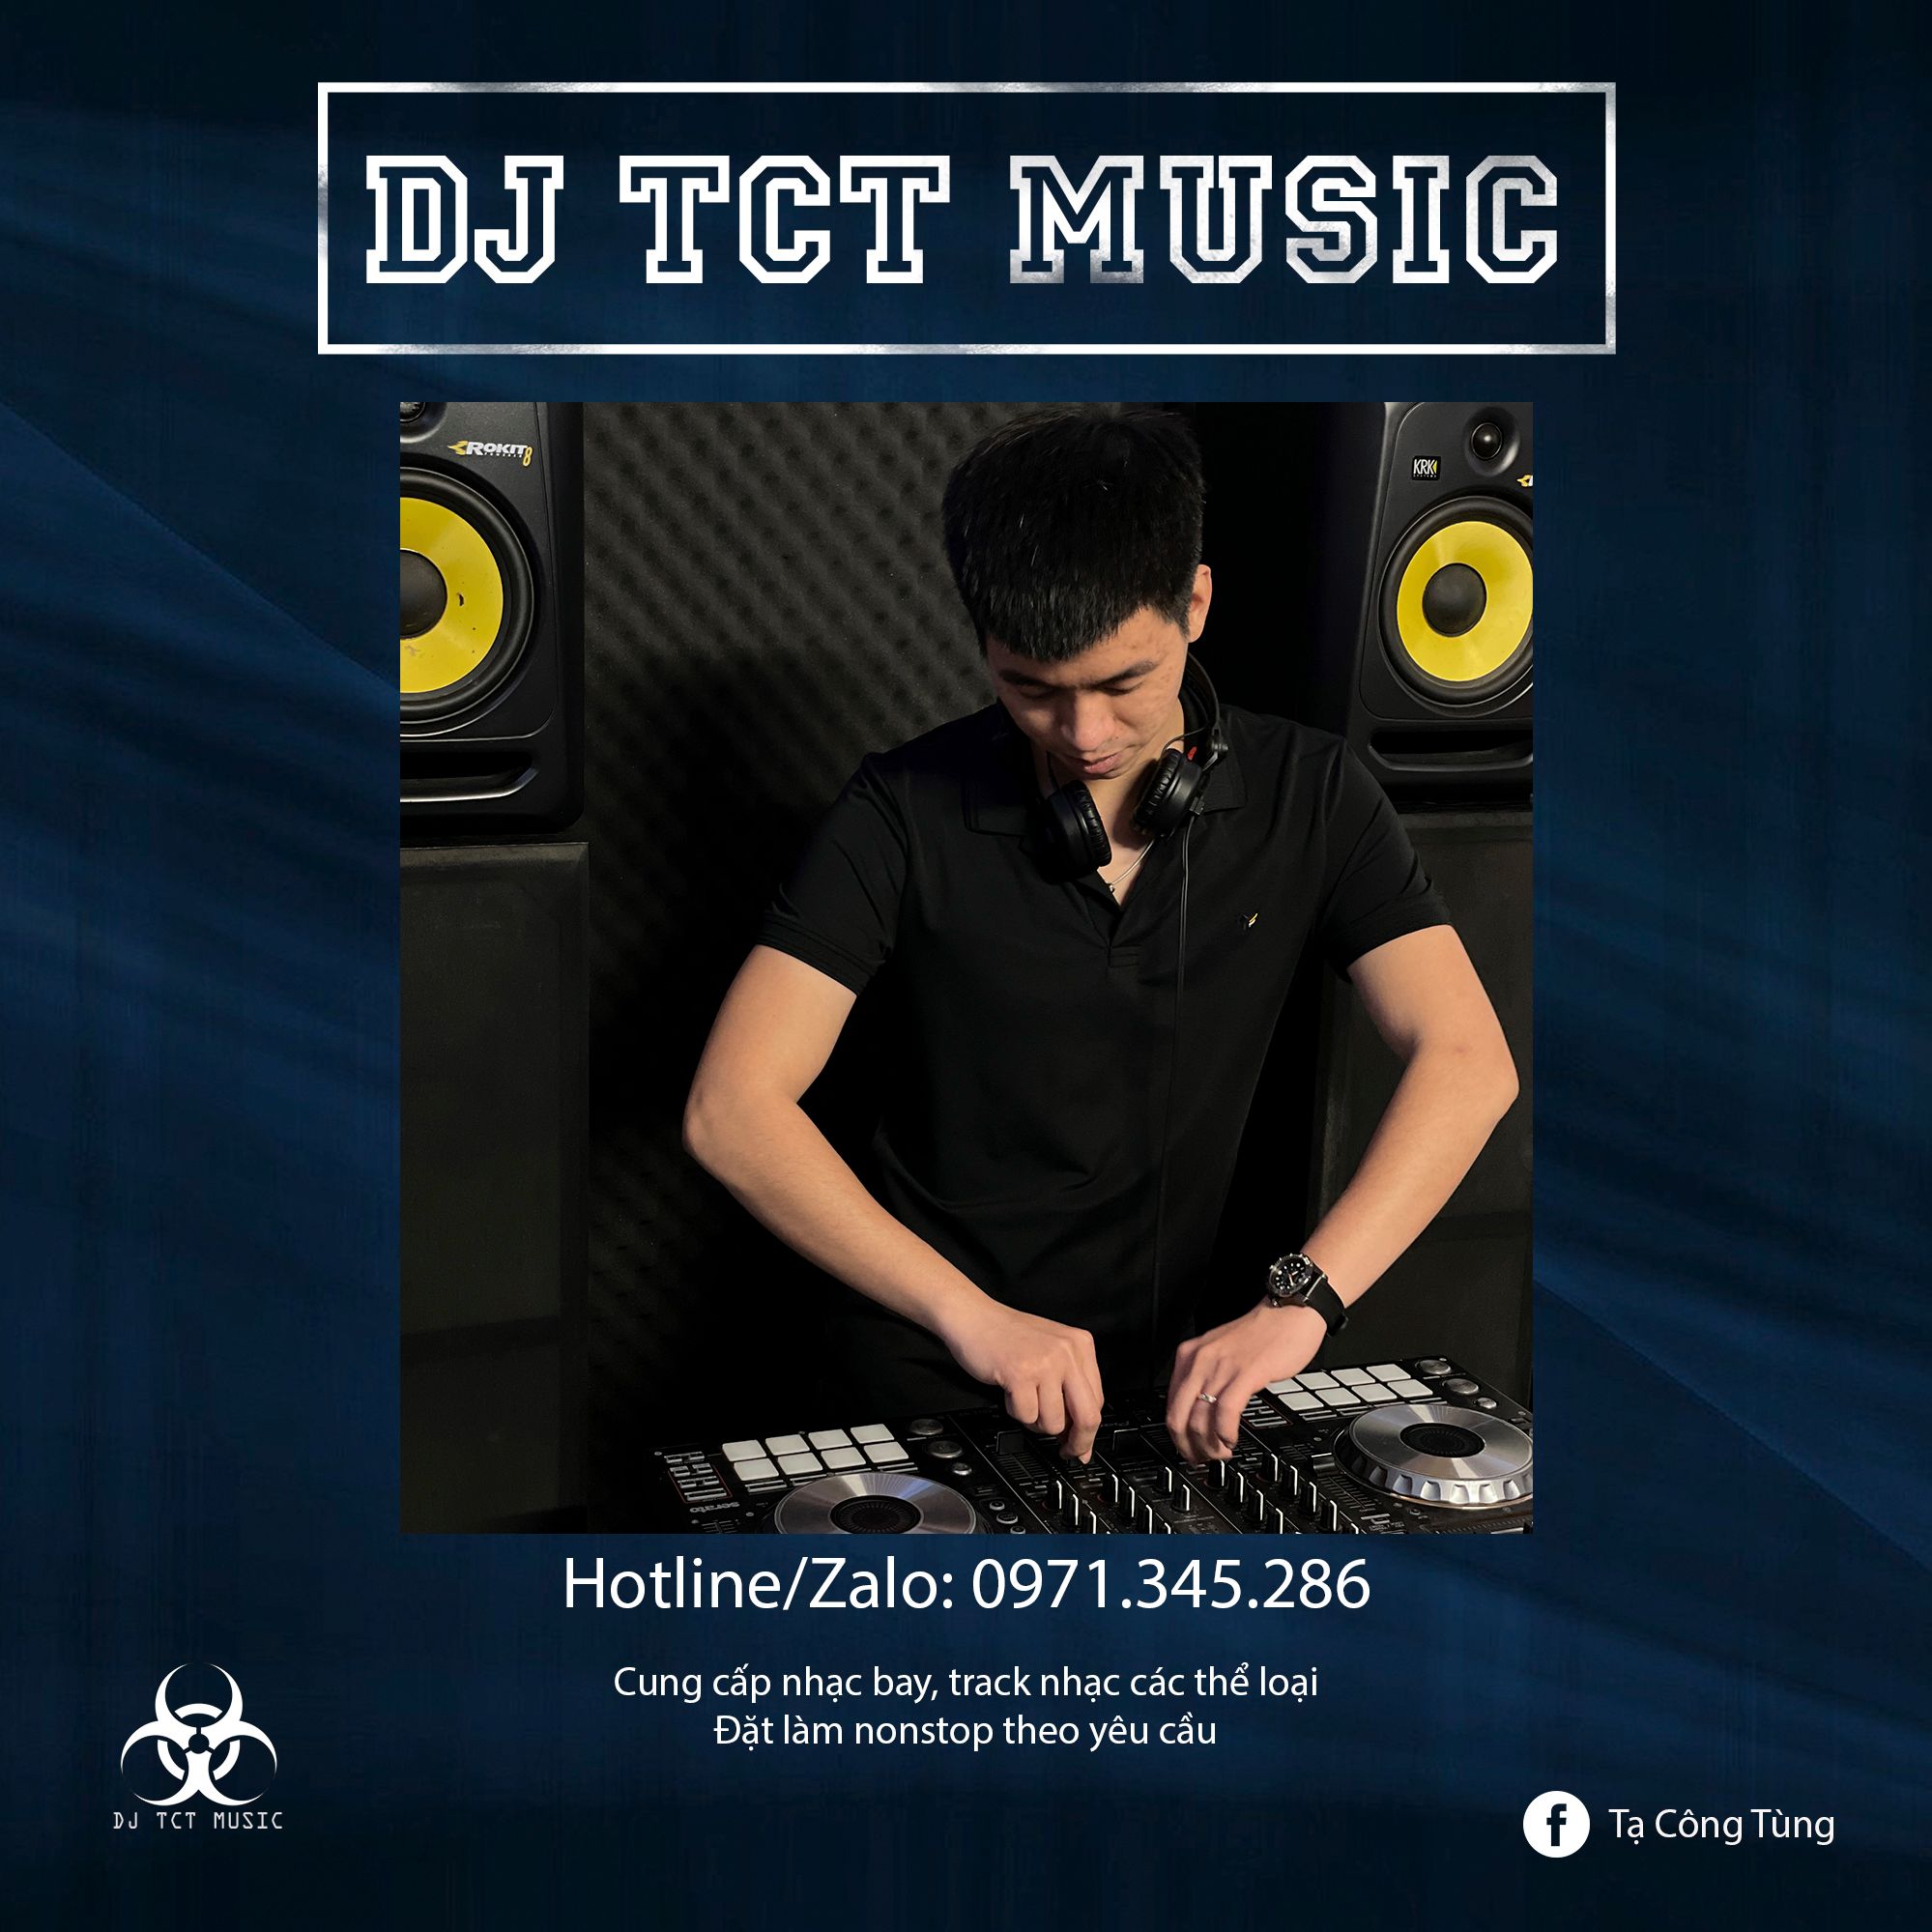 डाउनलोड करा HÀNG TRÔI KE 2022 _ DJ TCT MUSIC 0971345286 _ NONSTOP BAY PHÒNG GIỌT NƯỚC CHẢY DỊU ÊM